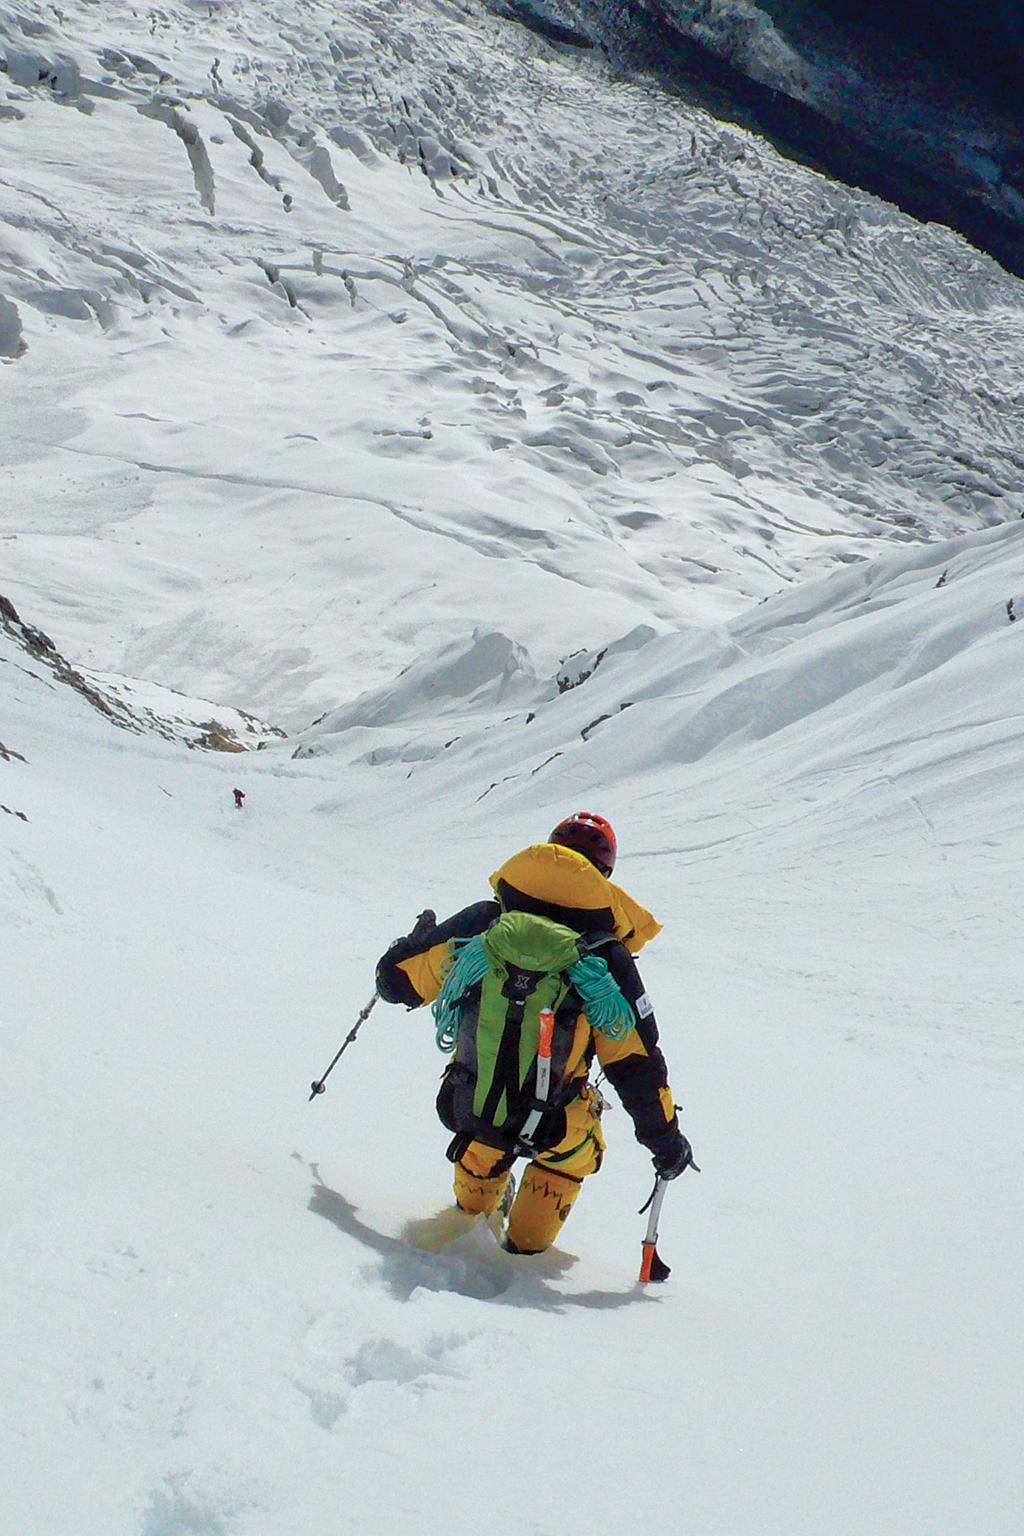 Jean Troillet ESTILO ALPINO Jean Troillet, alpinista y navegante suizo-canadiense, obtuvo su certificación como guía de montaña en 1969. Ha coronado 10 cimas de más de 8.